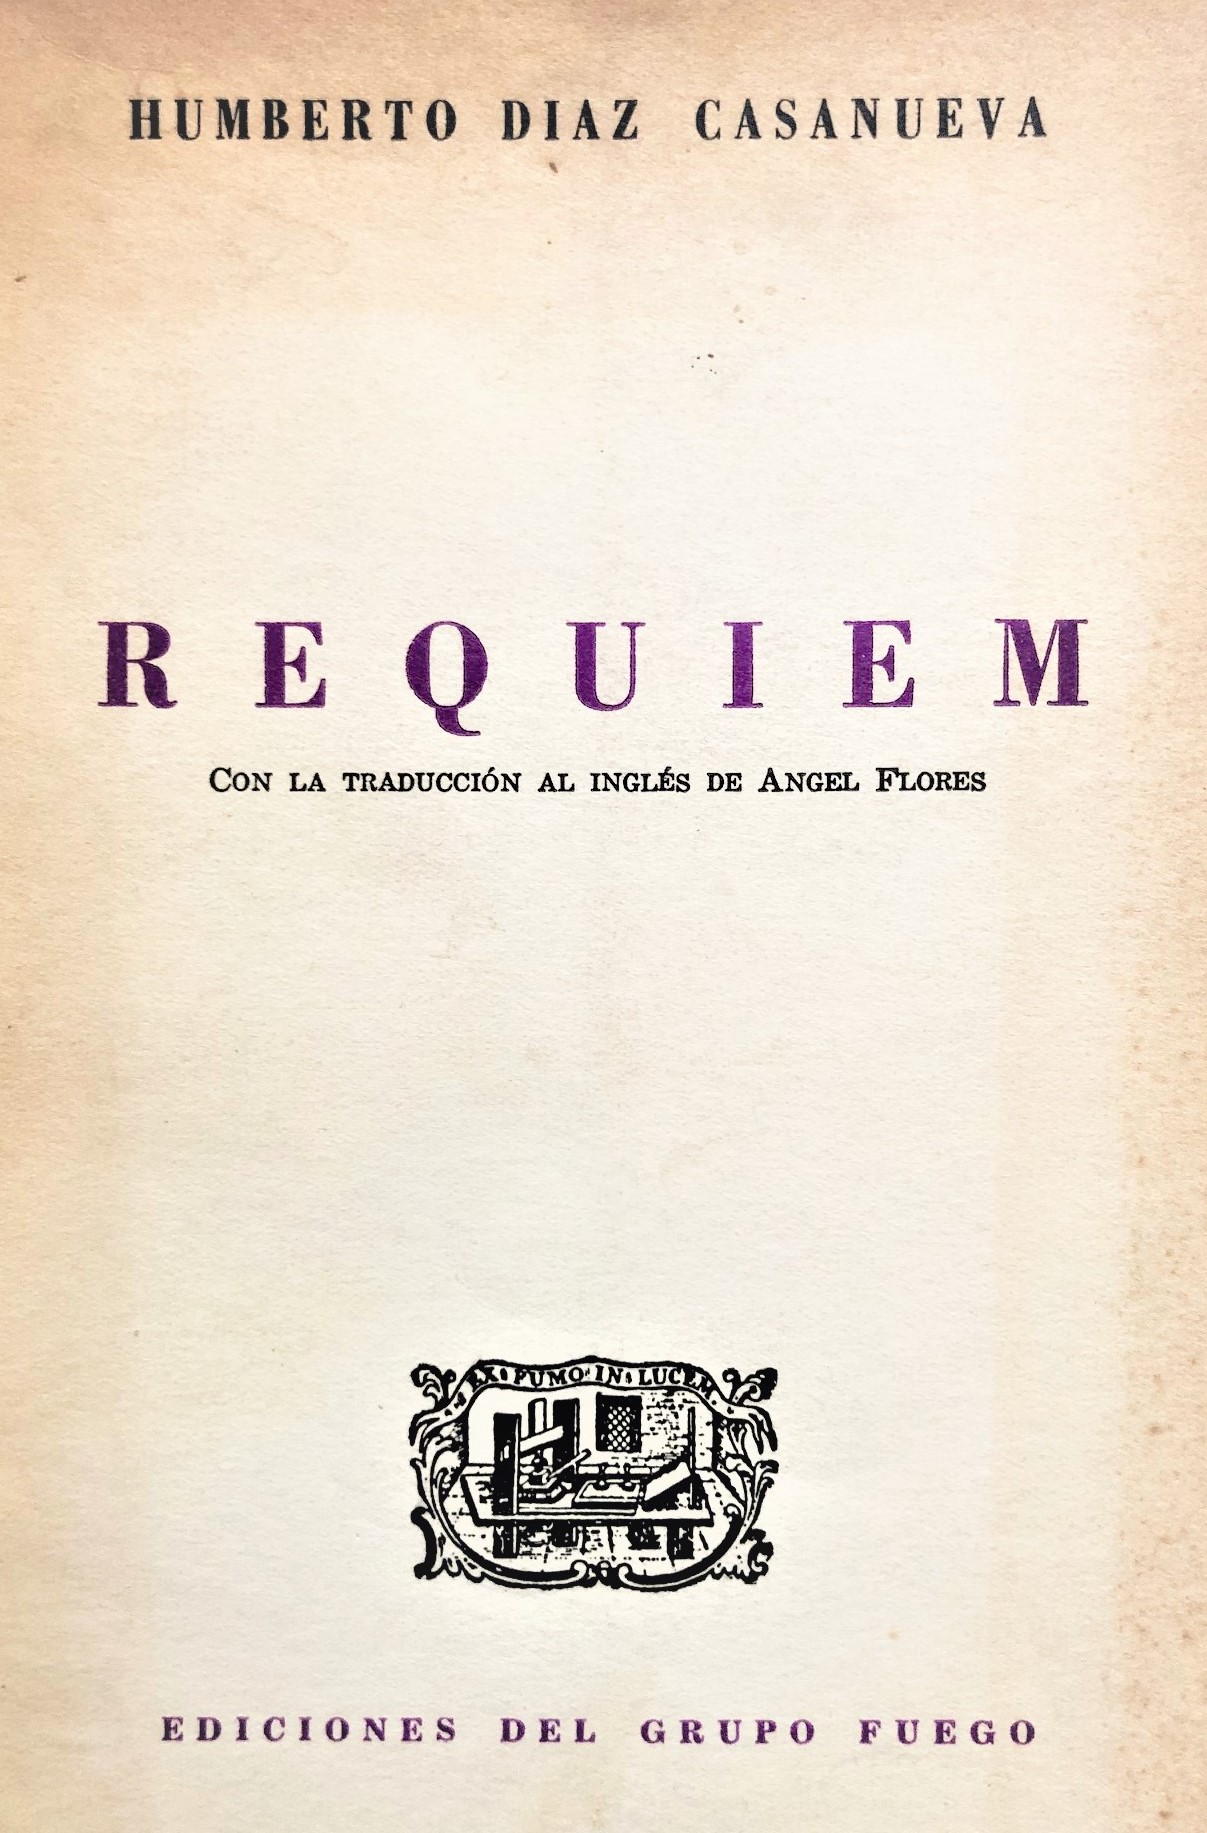 Humberto Diaz Casanueva - Requiem